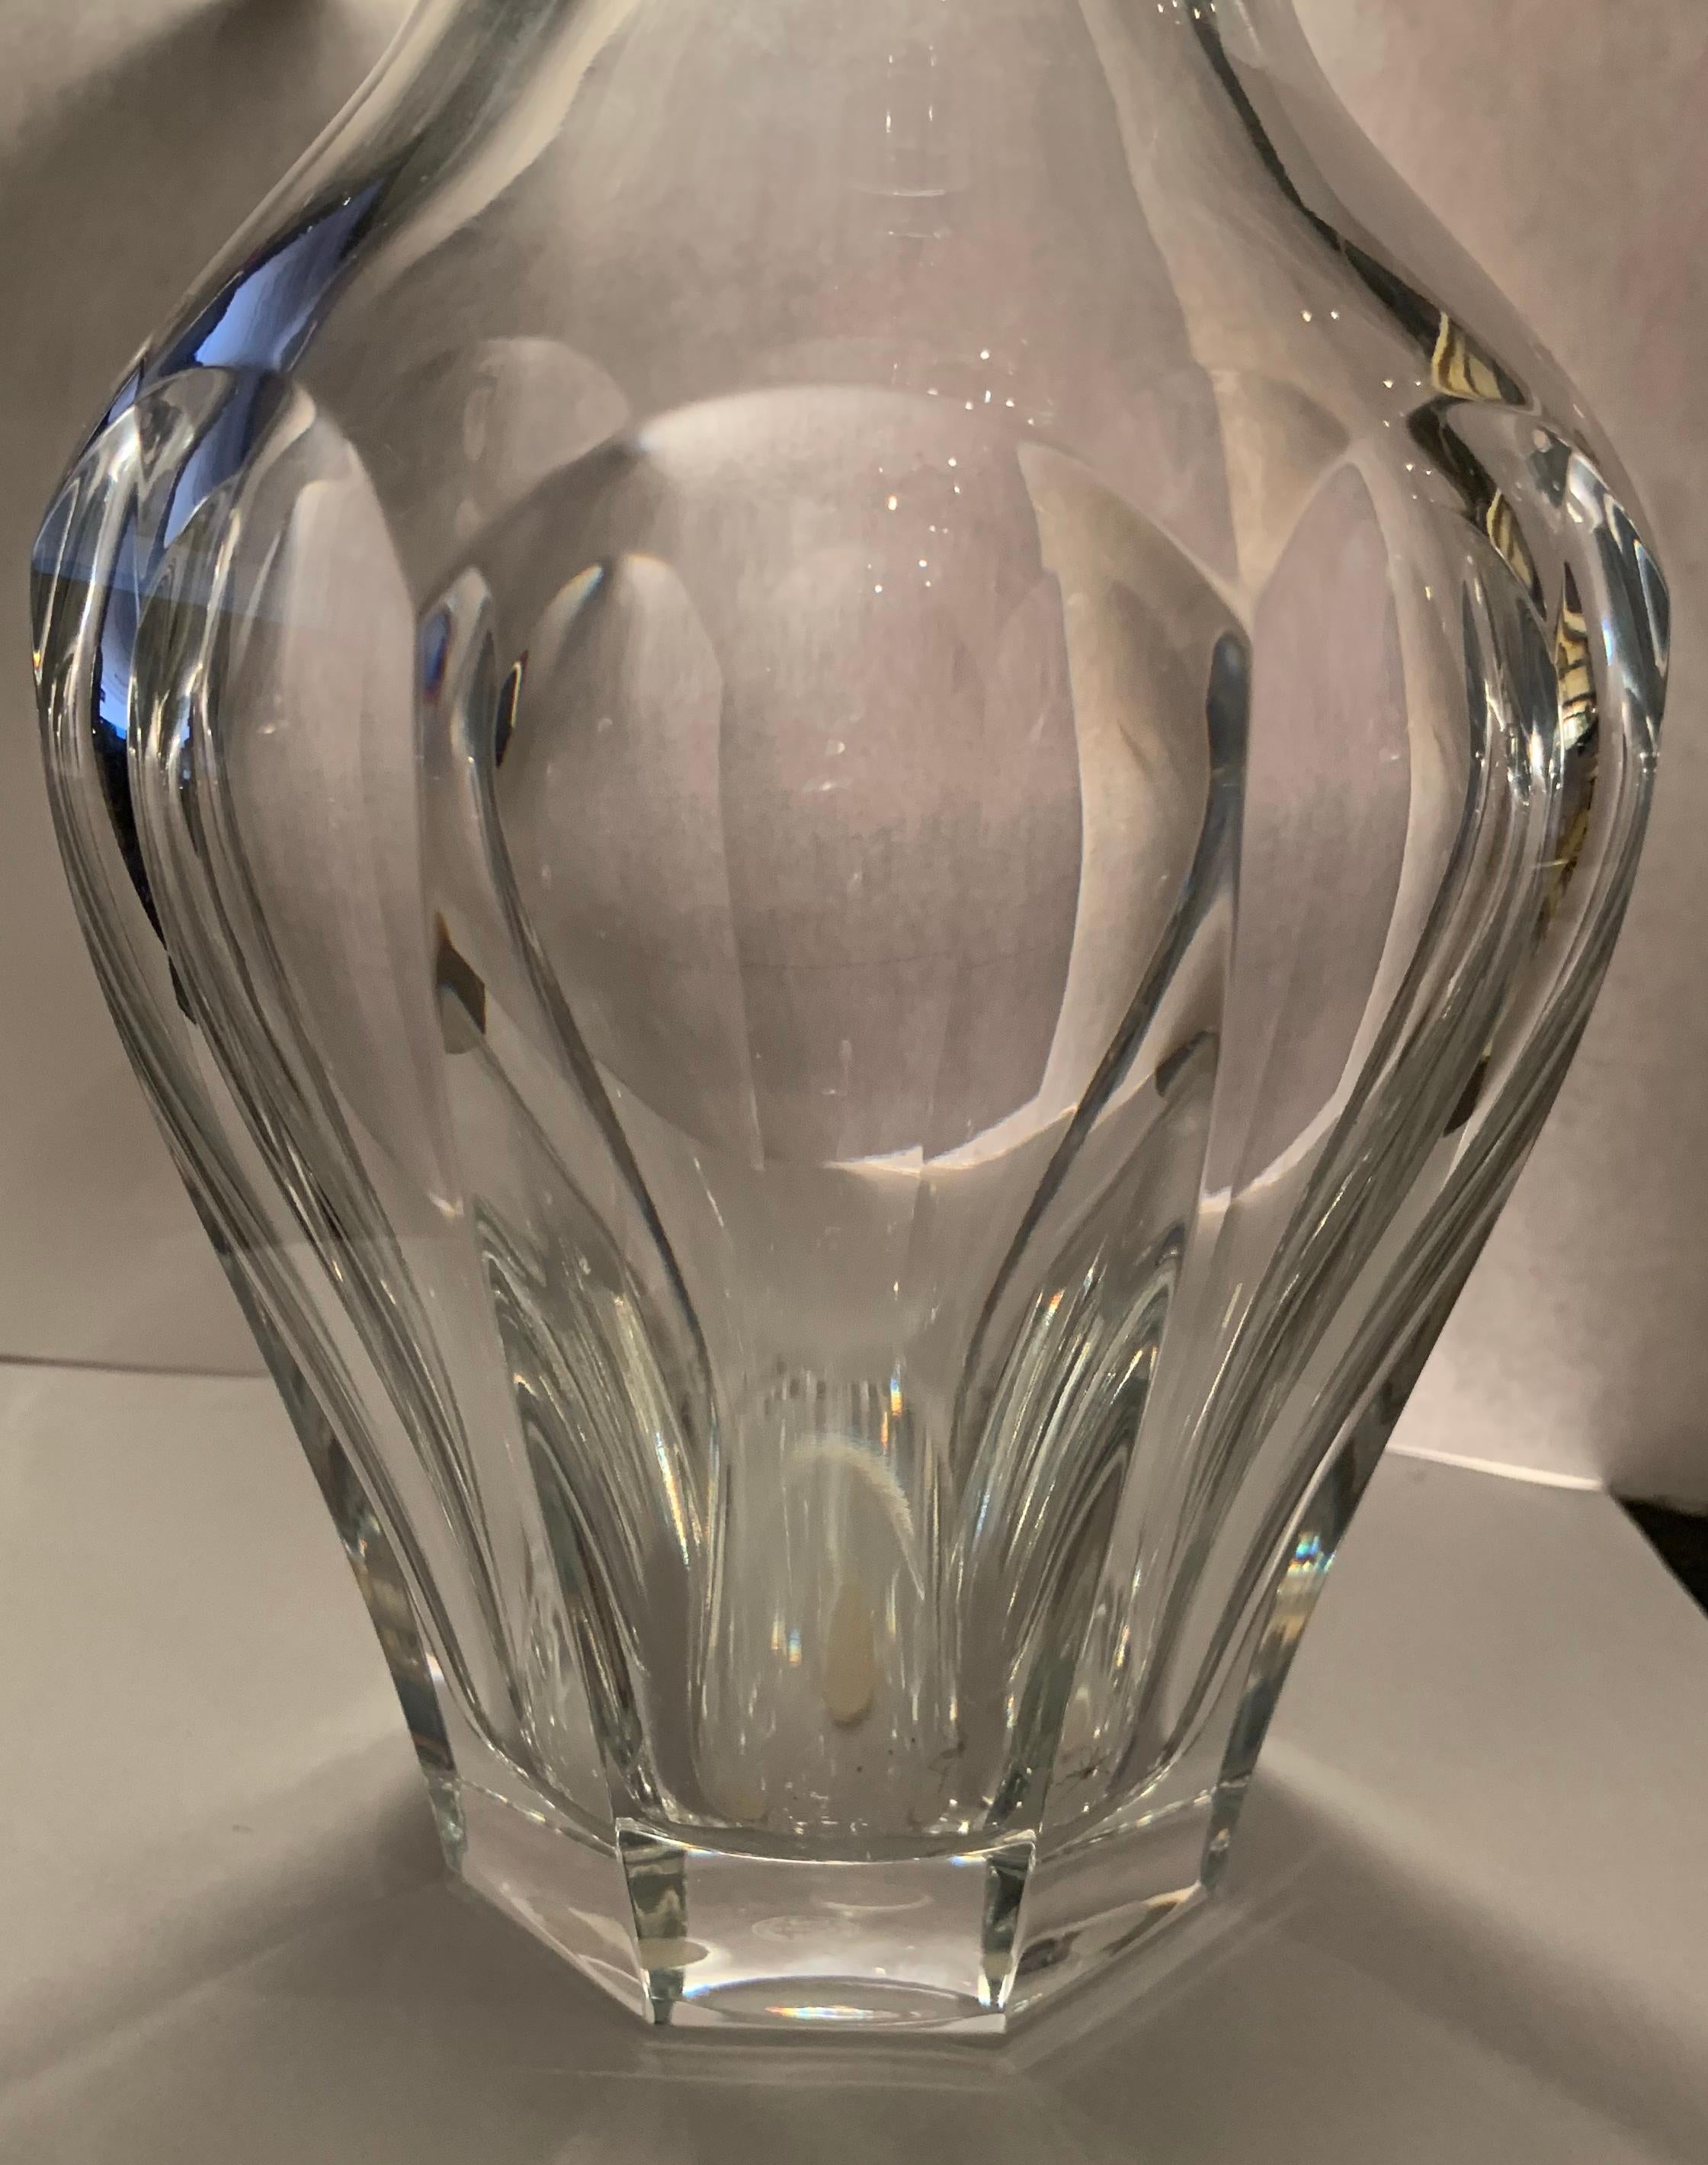 Magnifique vase en cristal signé Baccarat Harcourt.